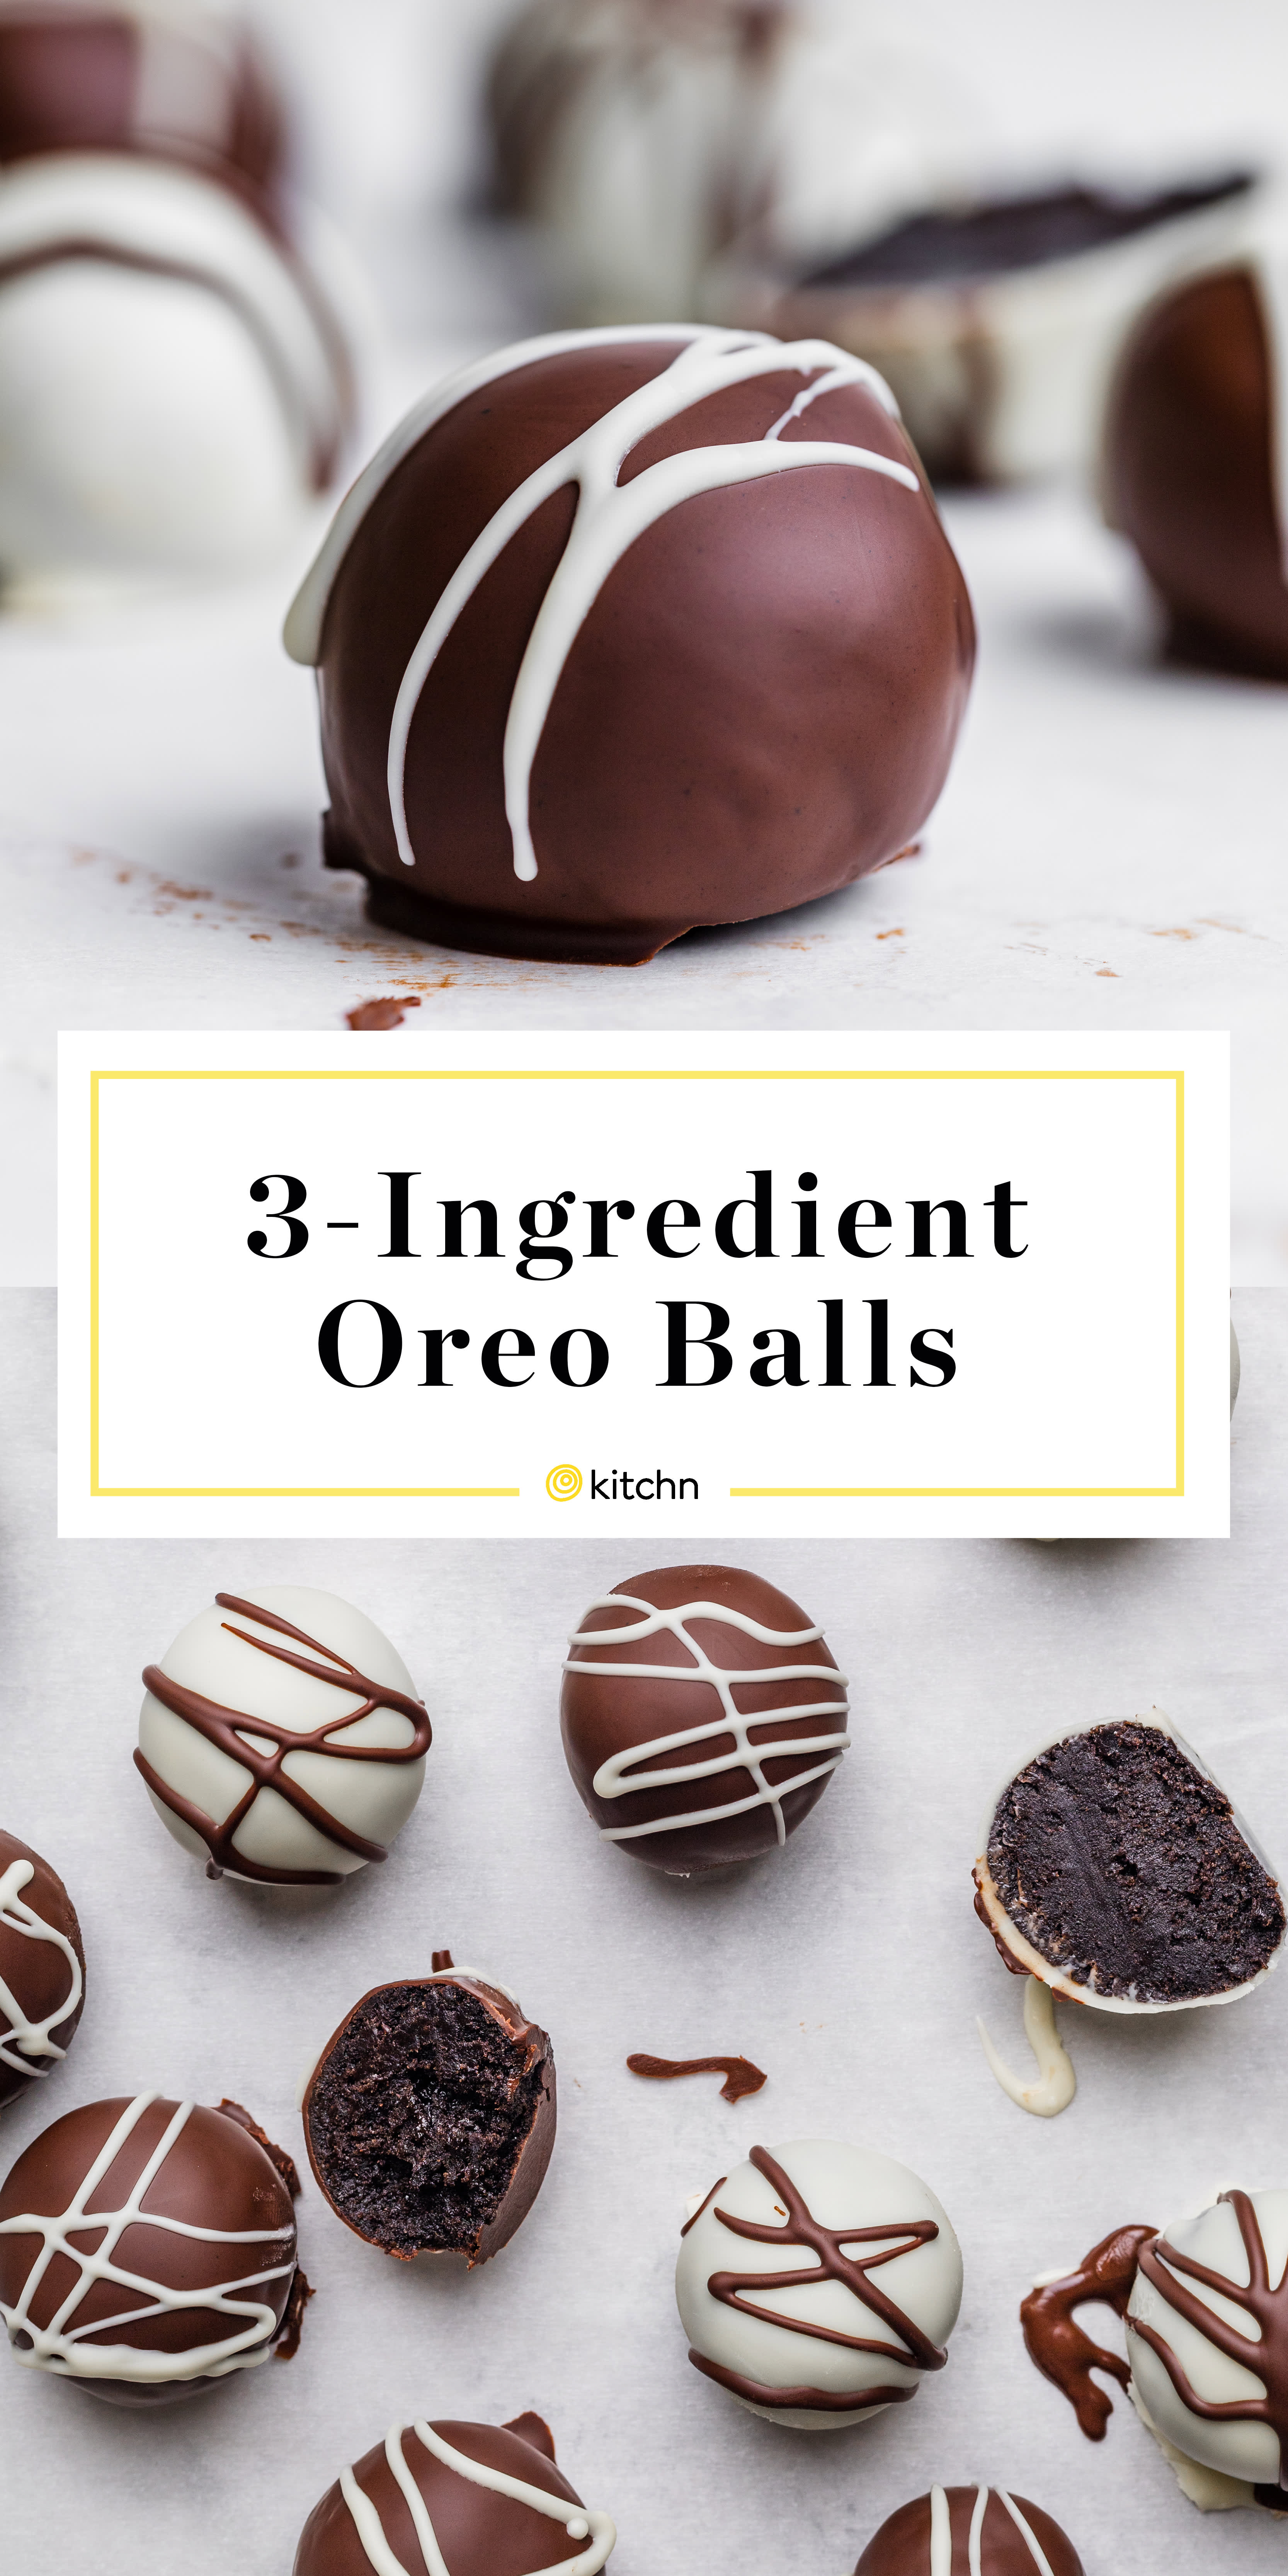 19-Ingredient Oreo Balls